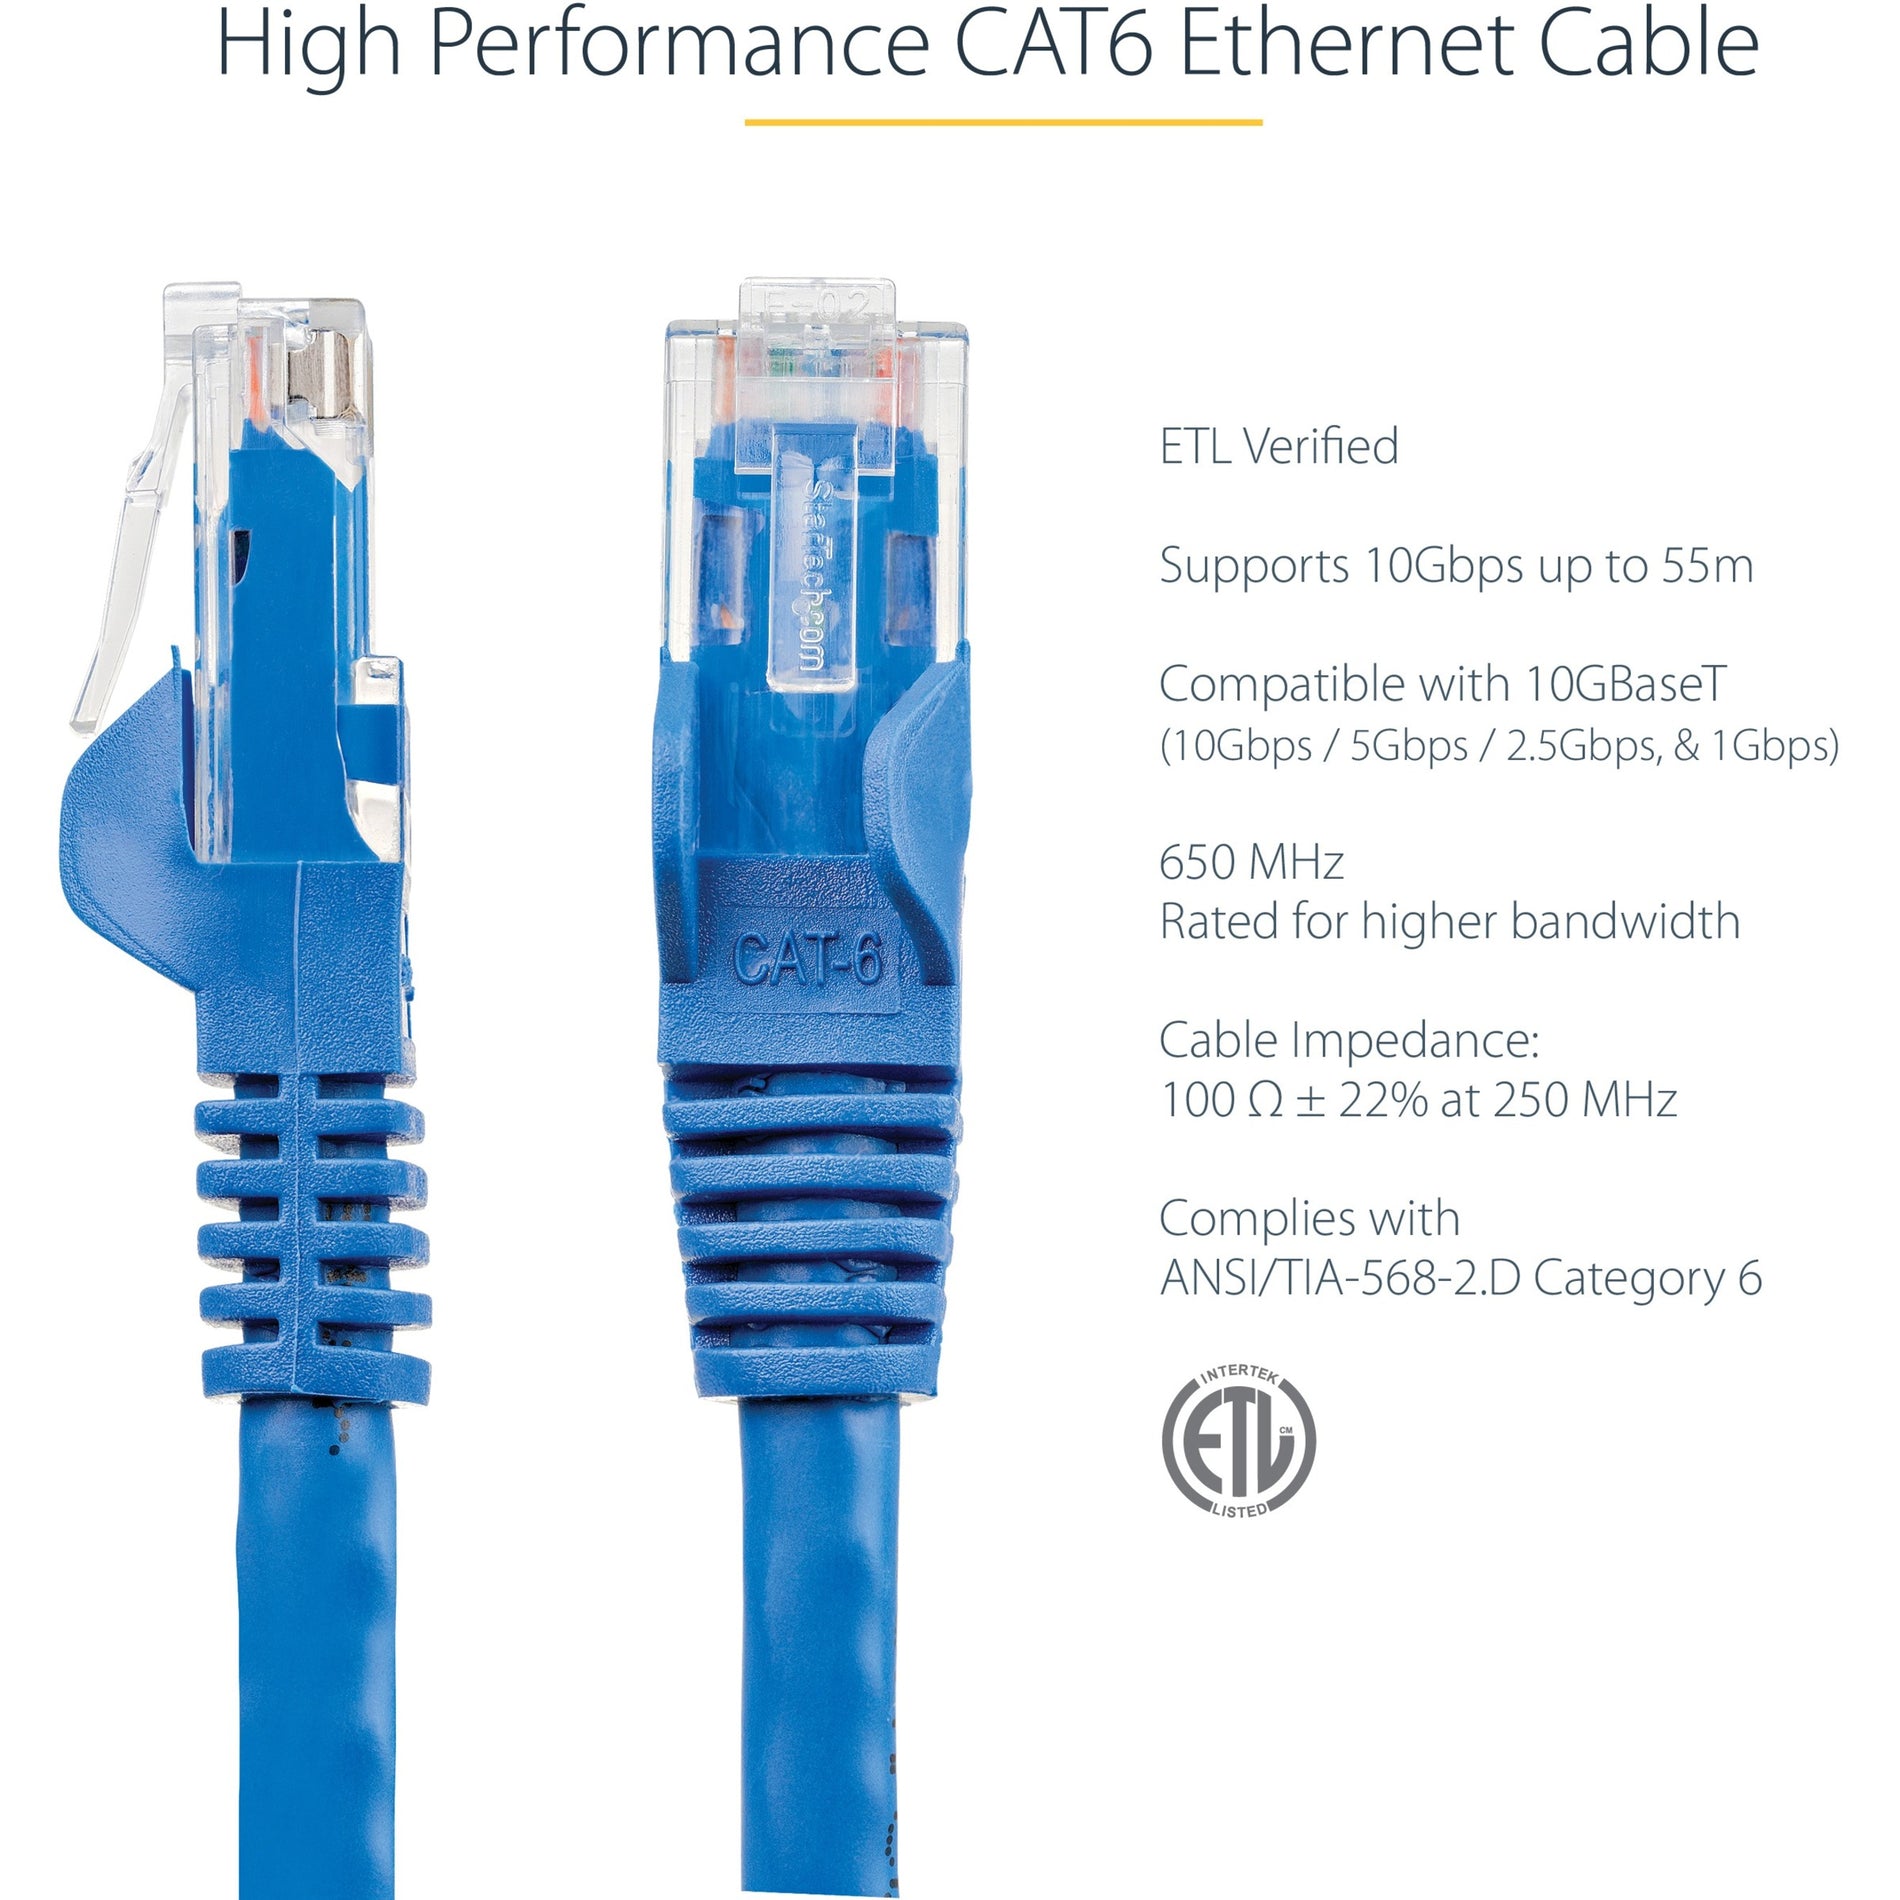 StarTech.com N6PATCH150BL Cat6 Patch Cable, 150ft Blue Ethernet Cable - Long, Snagless RJ45 Connectors